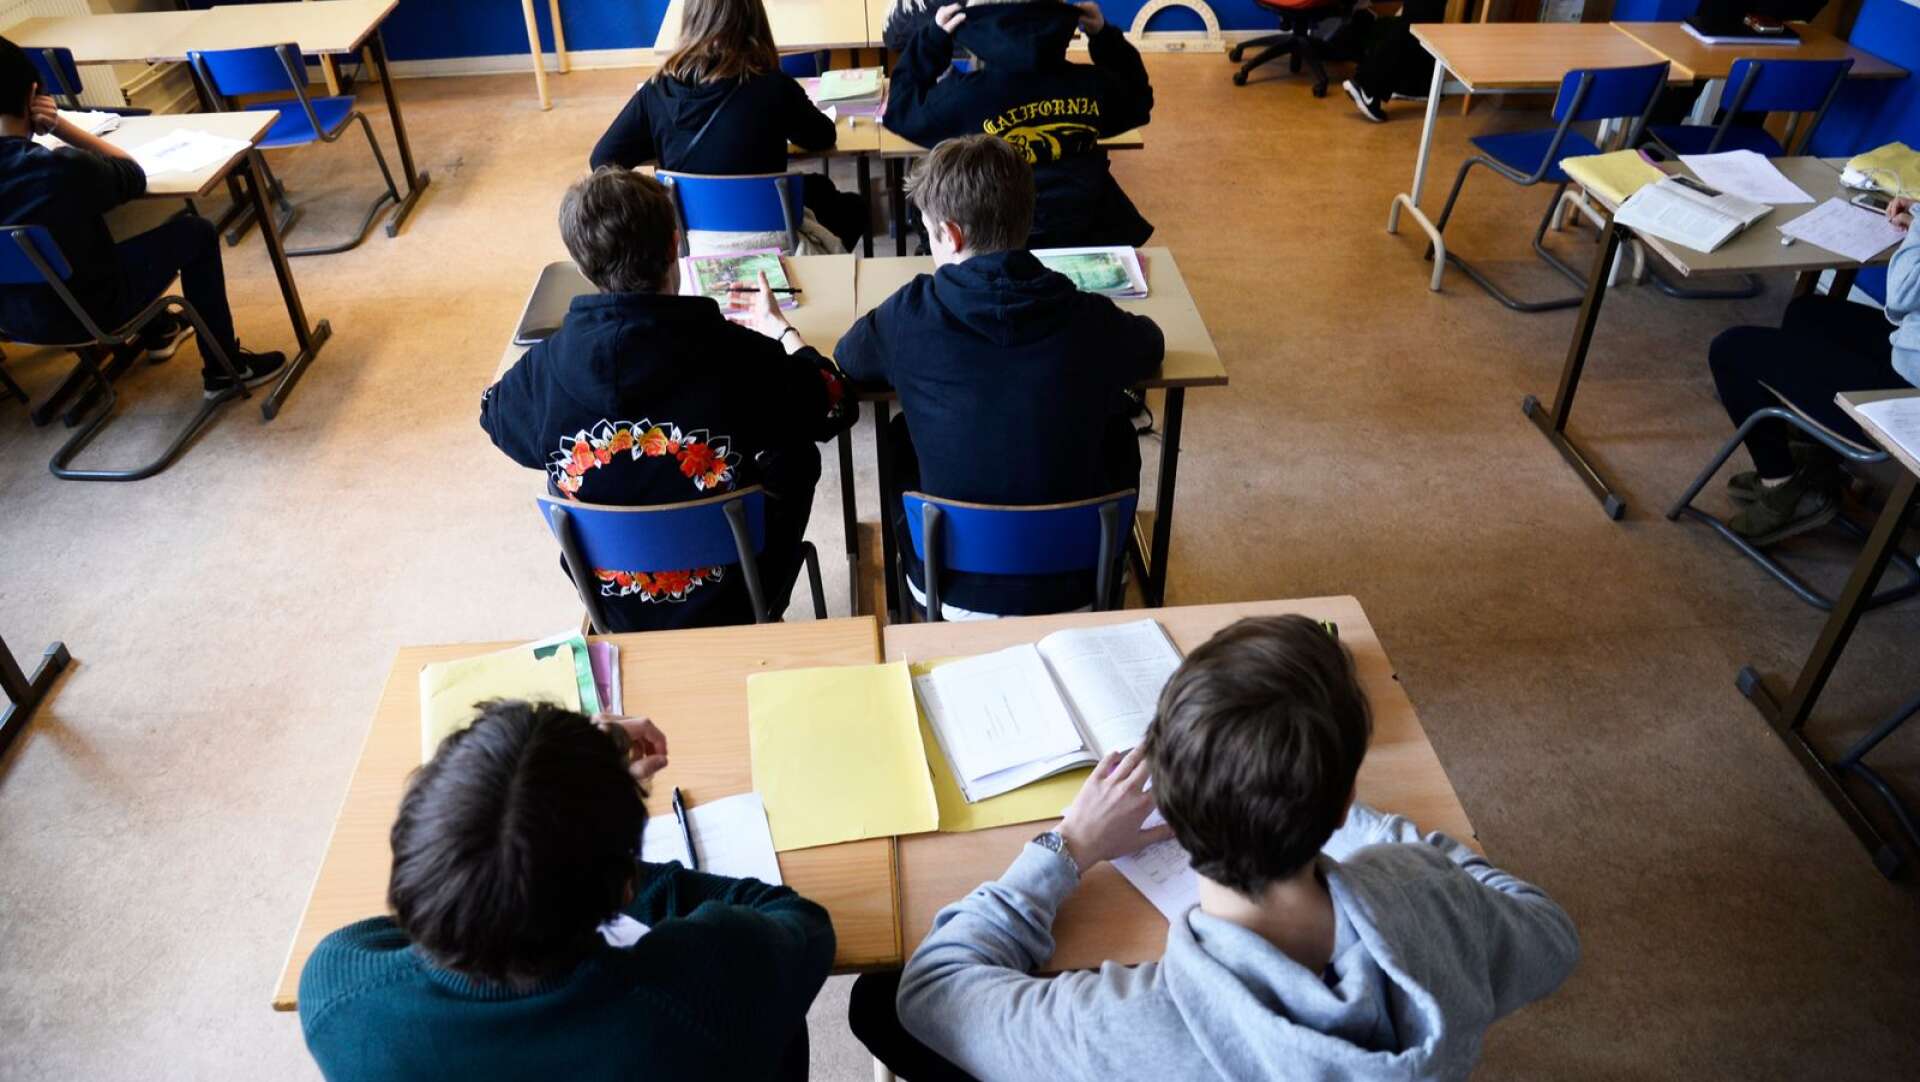 En man som stått åtalad för misshandel av sex elever på en skola i Värmland har fått lärarjobb i Åmål. Genrebild.